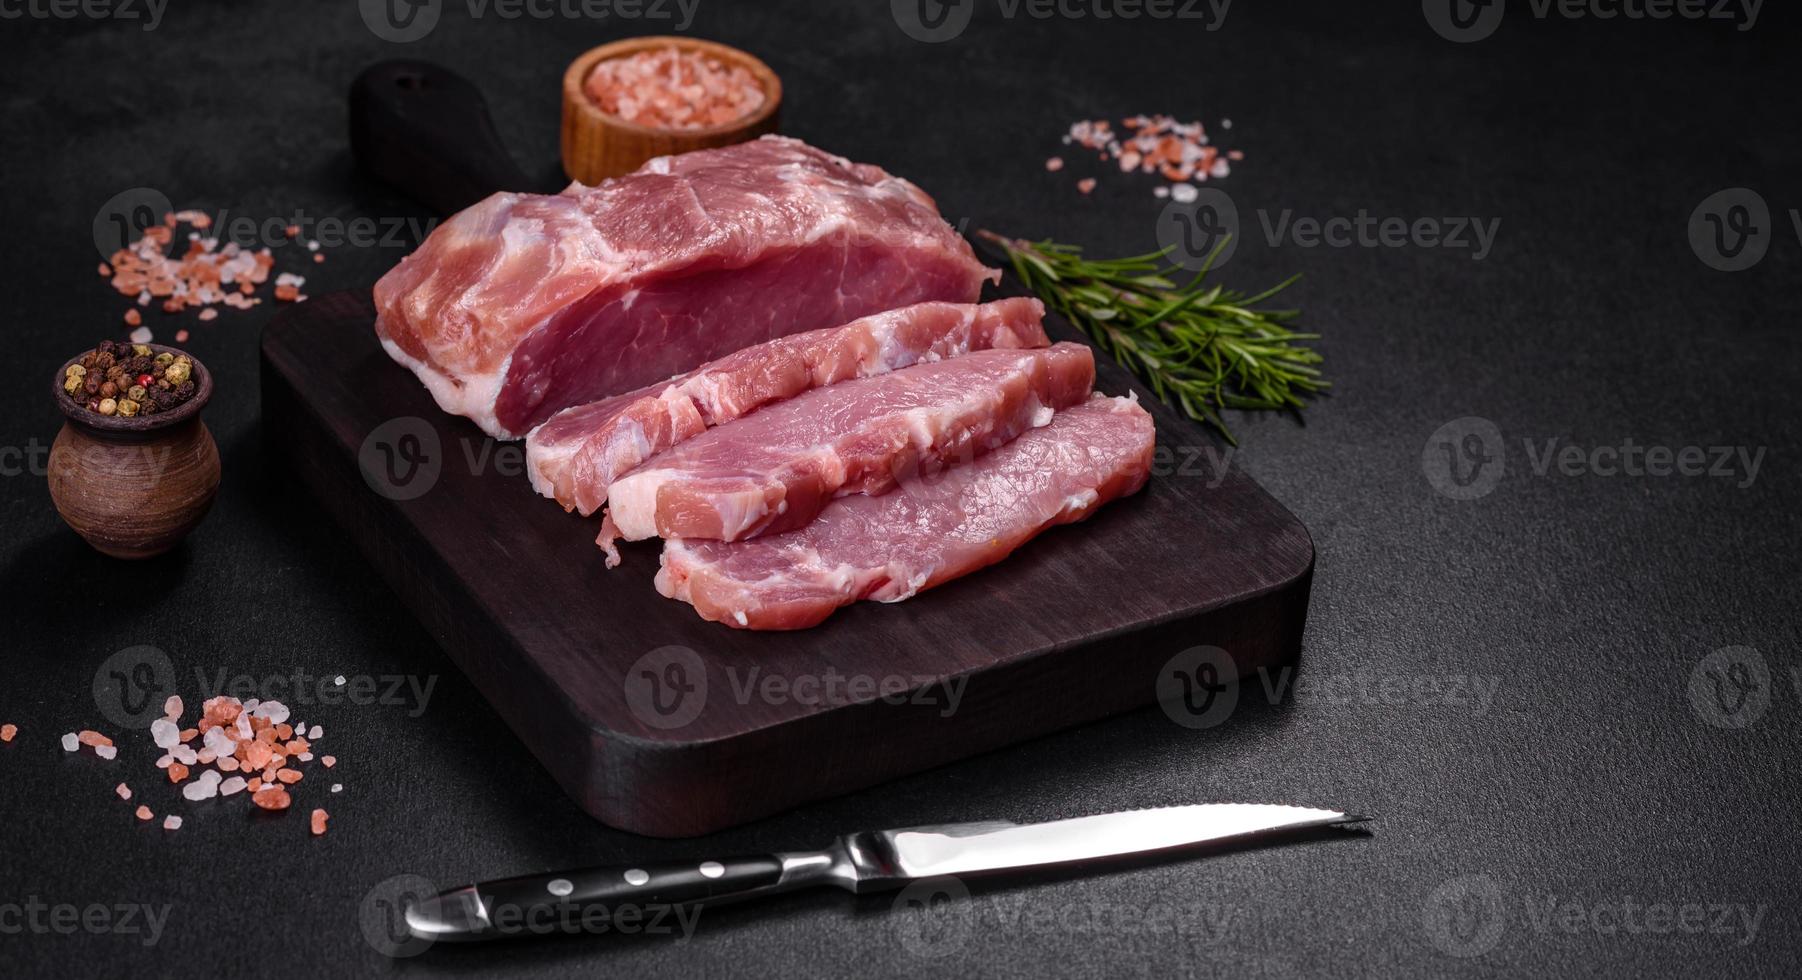 pedaço fresco de carne de porco crua com especiarias, sal e ervas em uma tábua de madeira foto